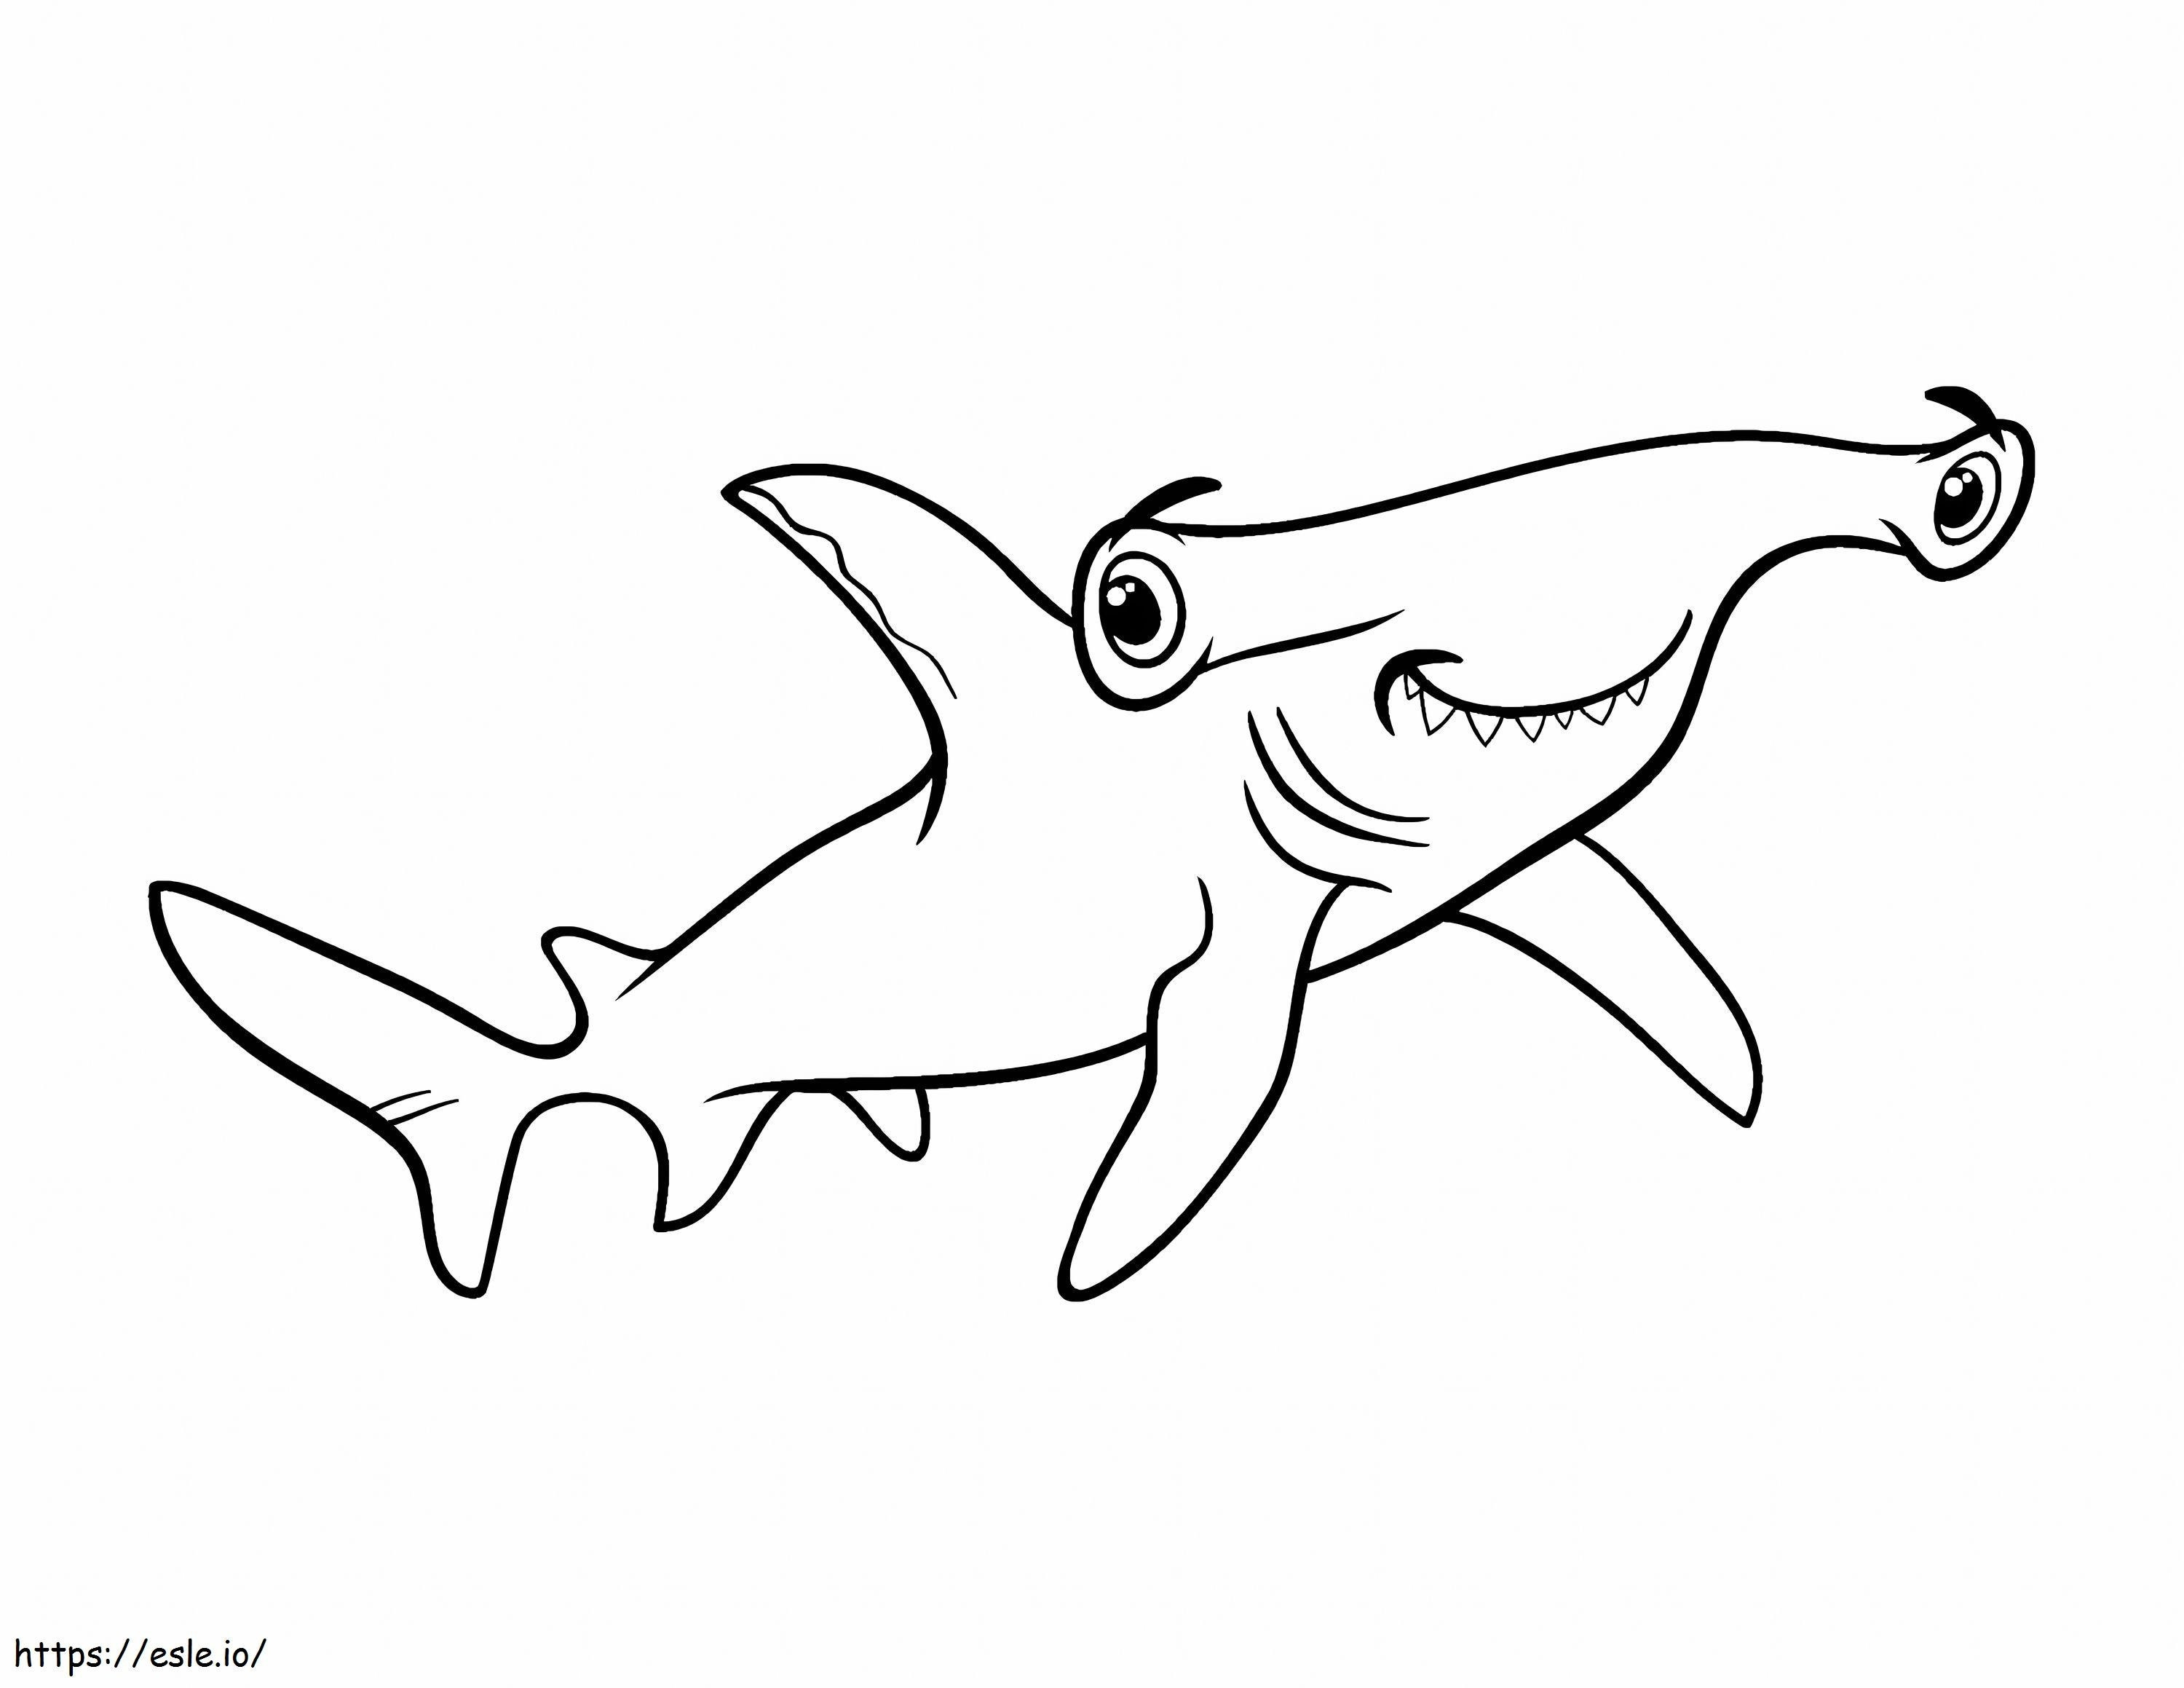 Tubarão-martelo sorridente para colorir